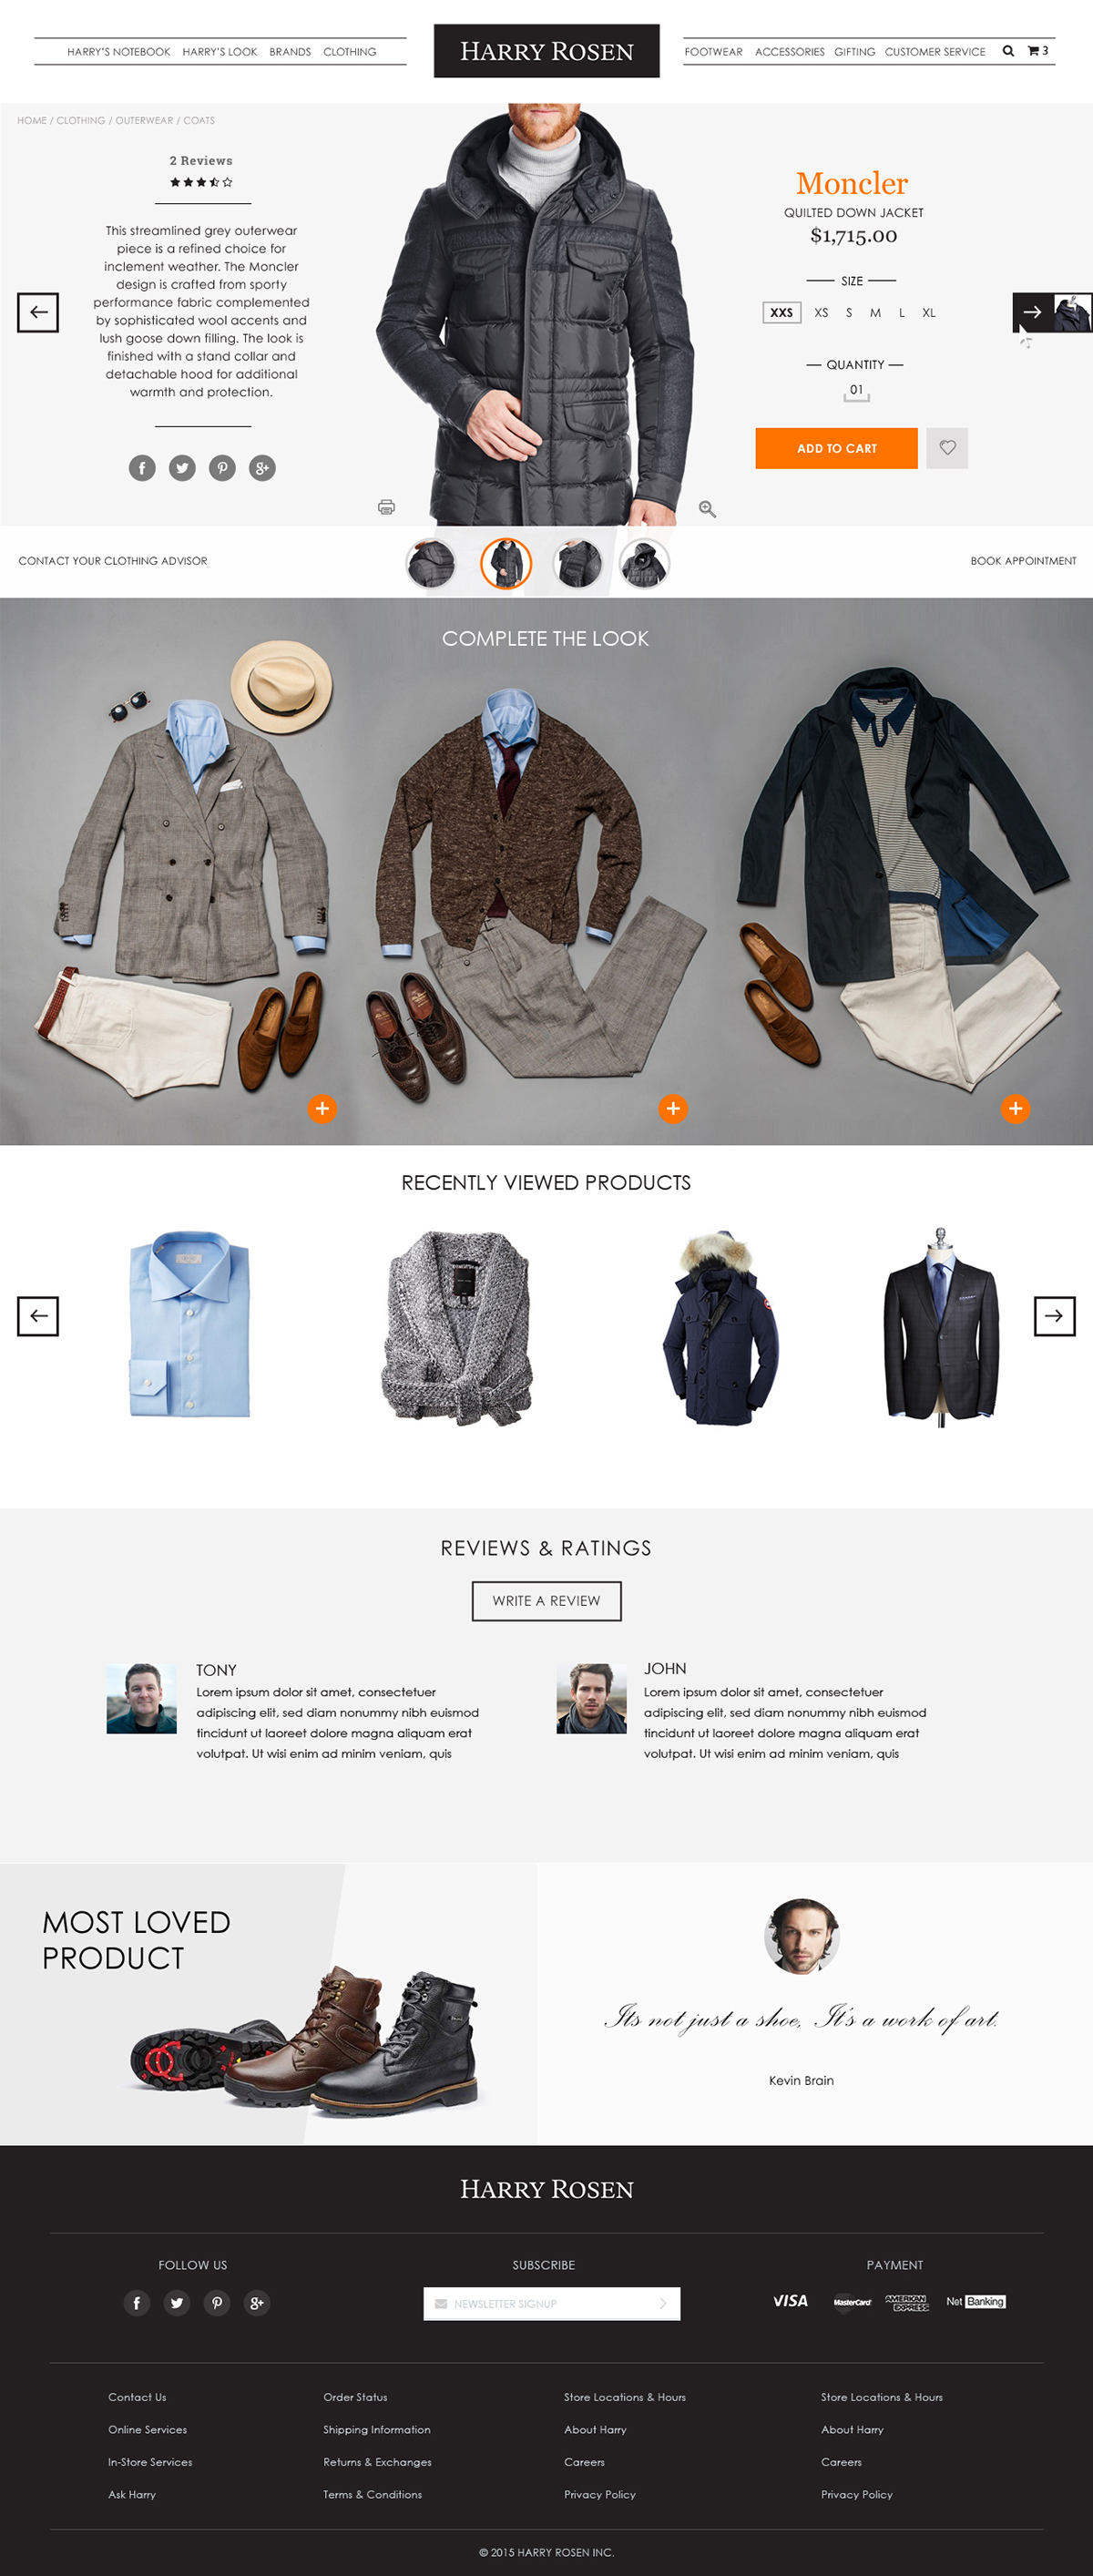 Website Best Website design Ecommerce luxury responsive website UI UserExperience ux Website Design